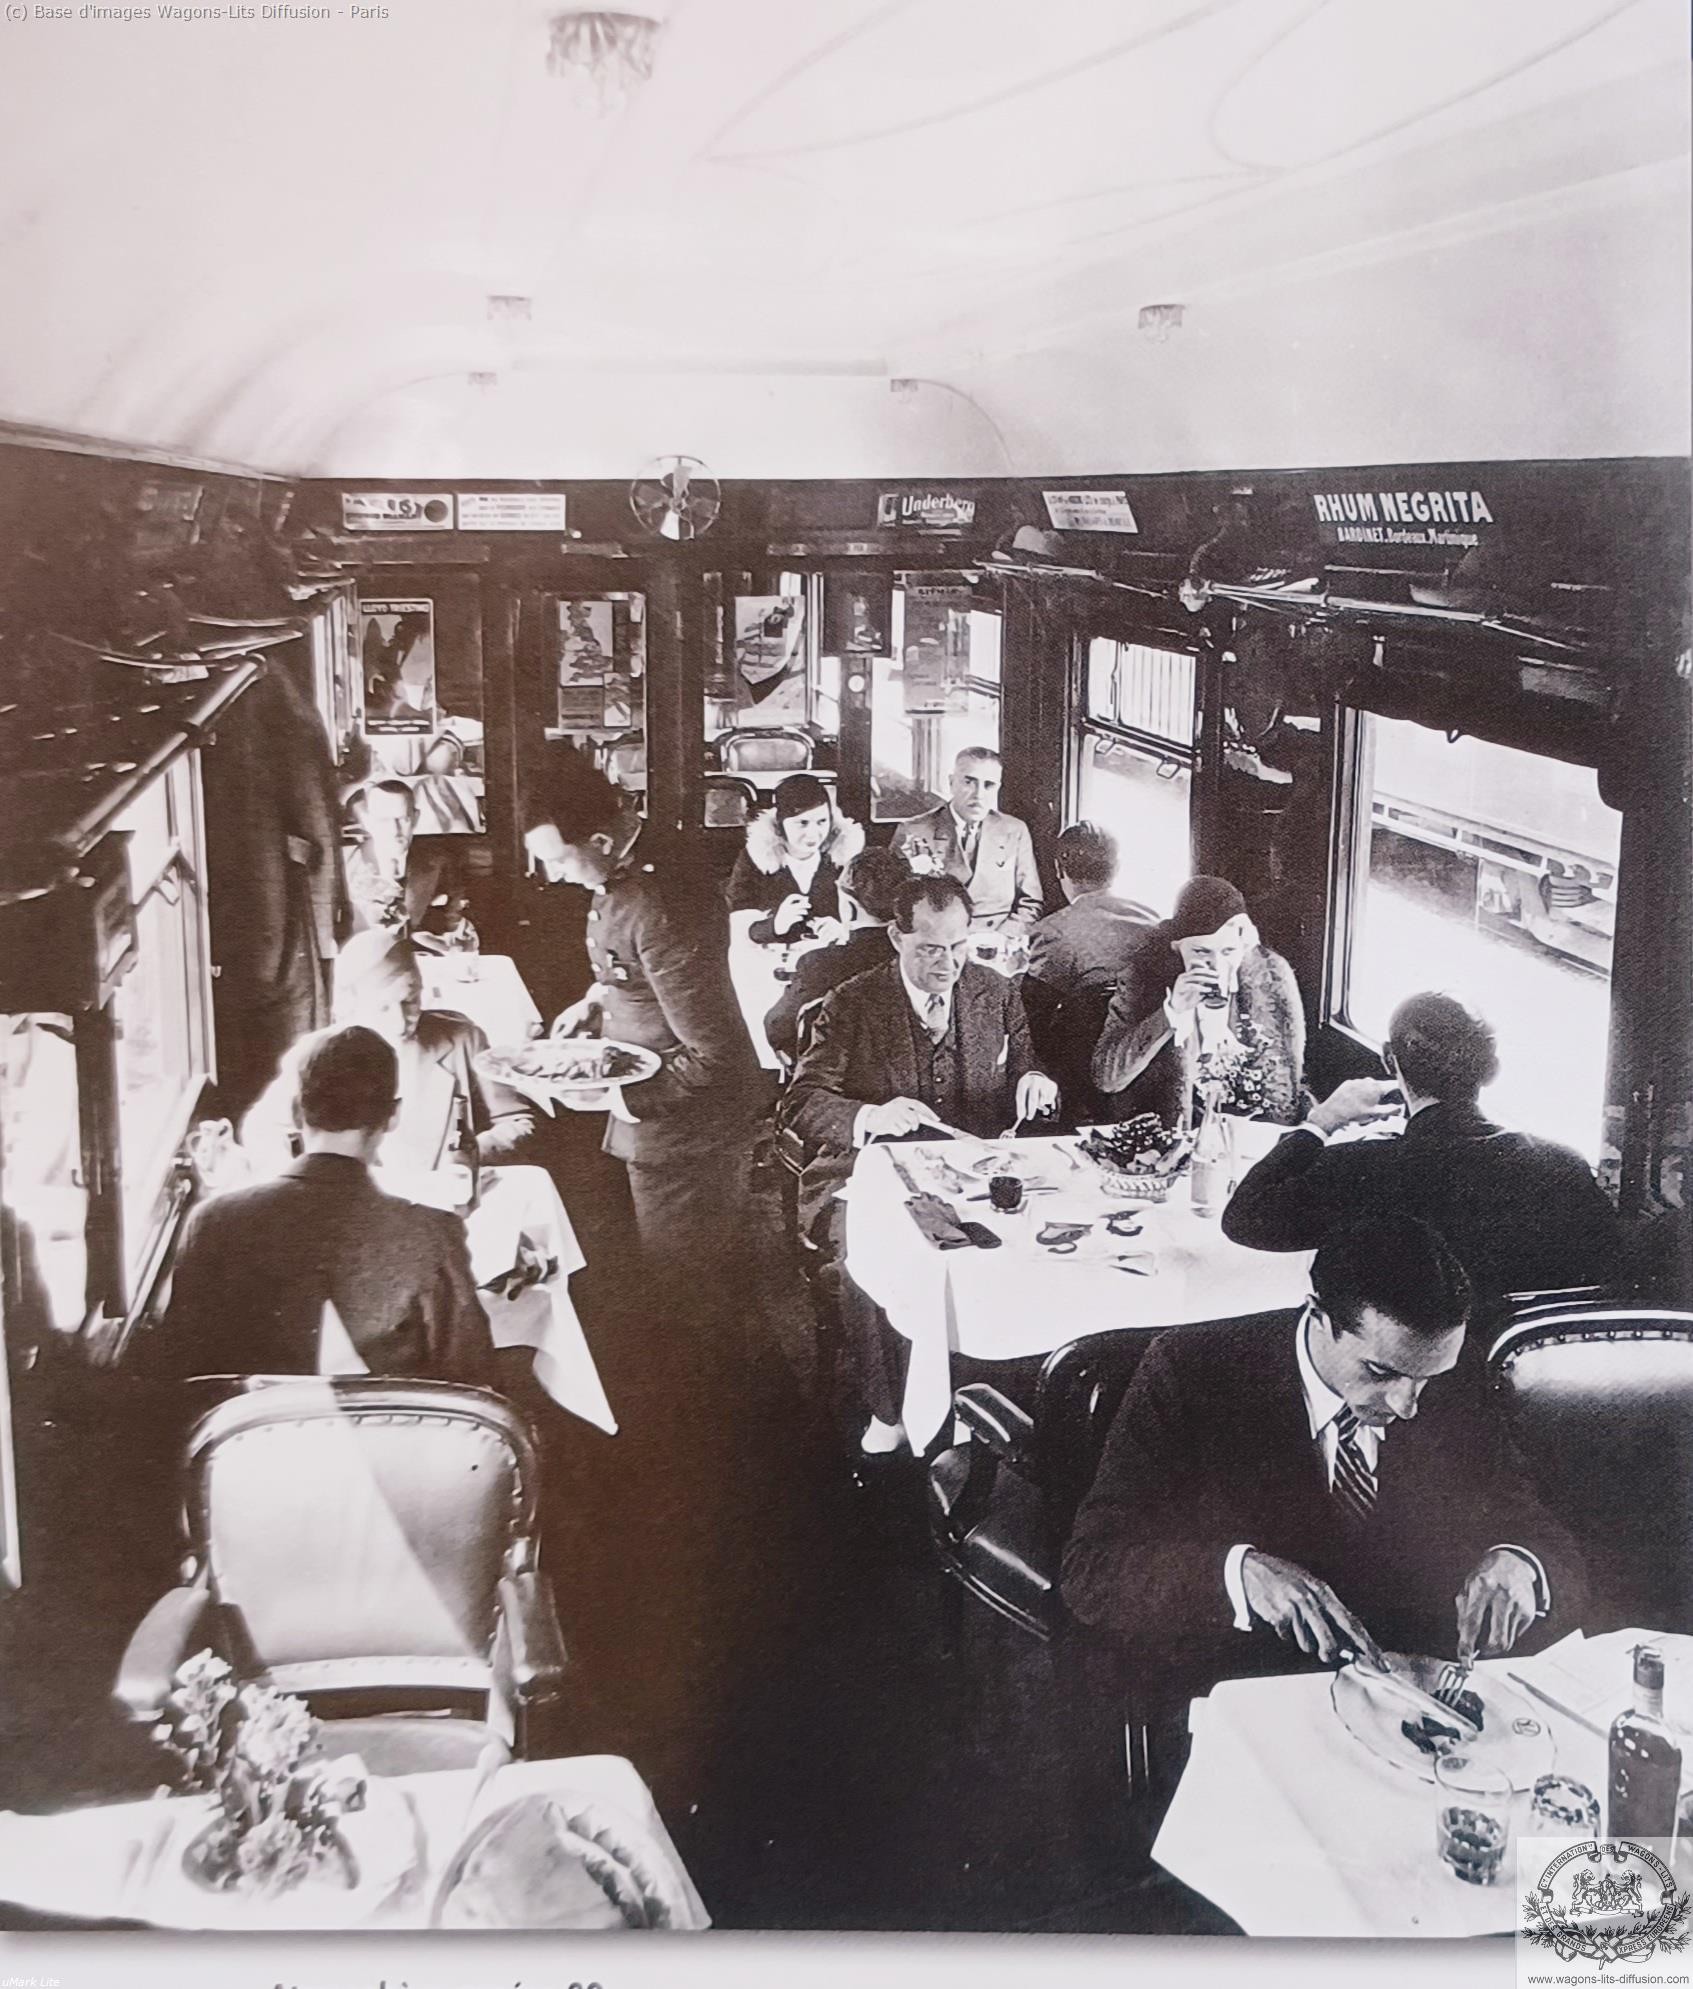 Wl voiture restaurant dans les annees 1930